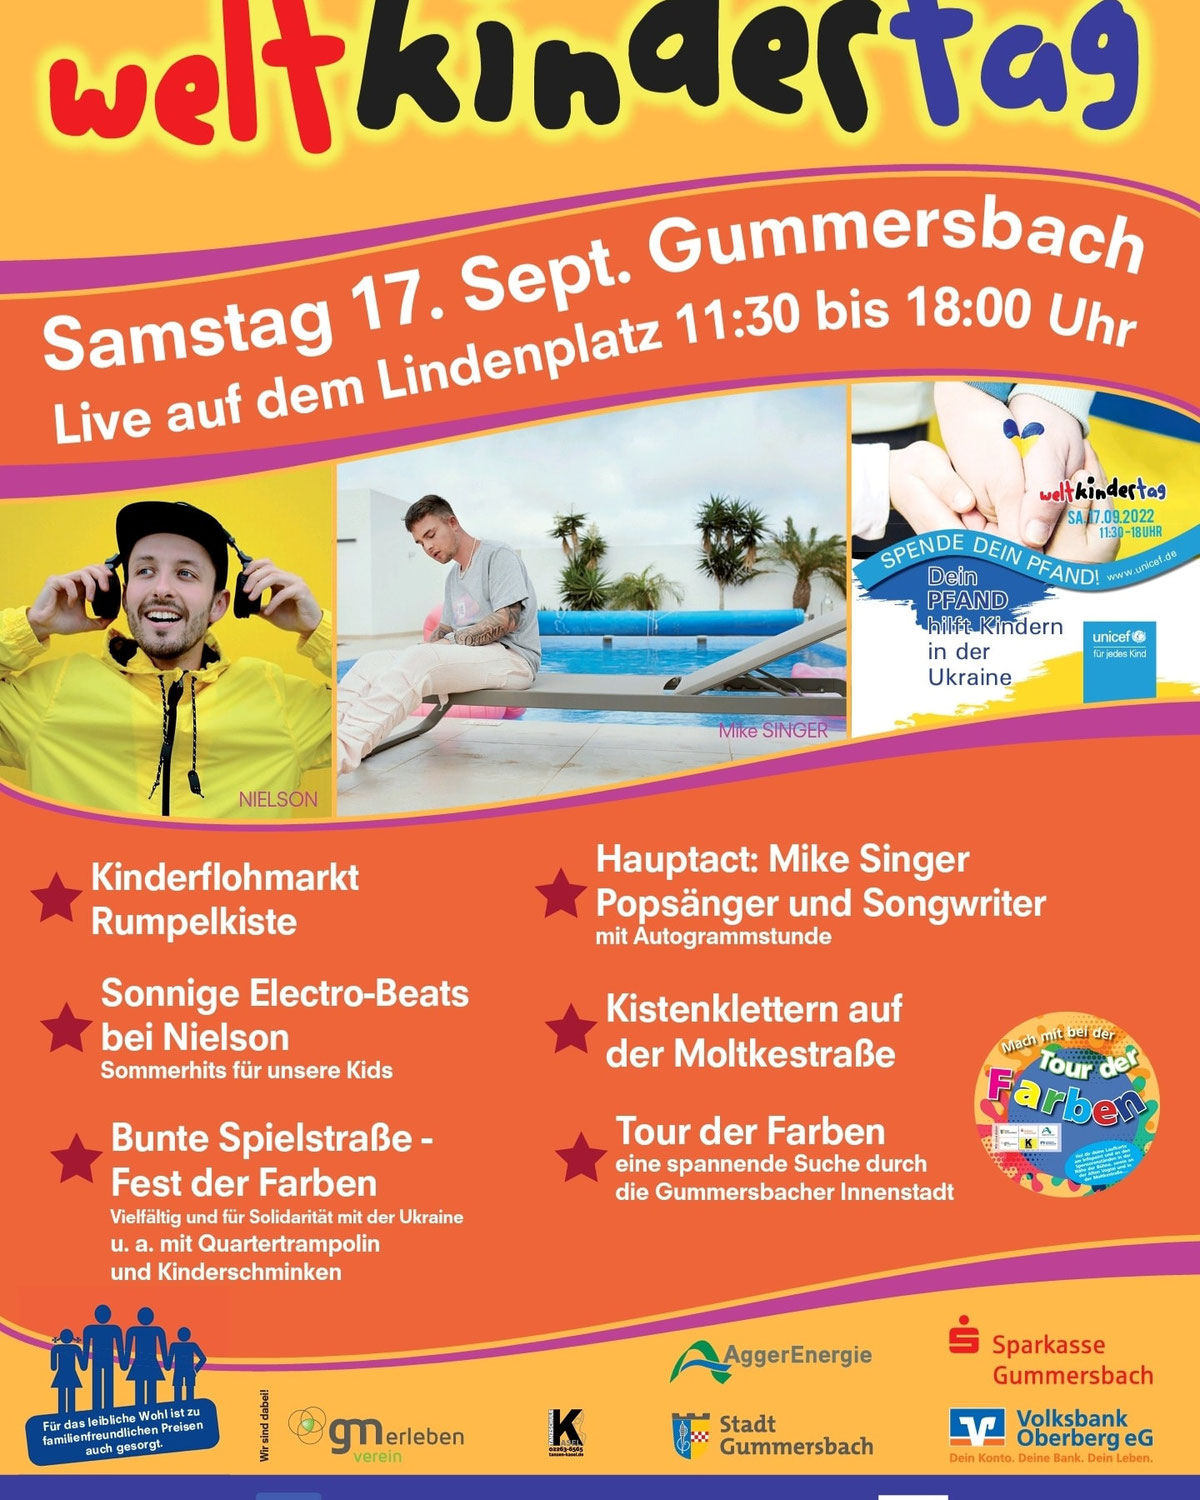 Weltkindertag 2022 Gummersbach